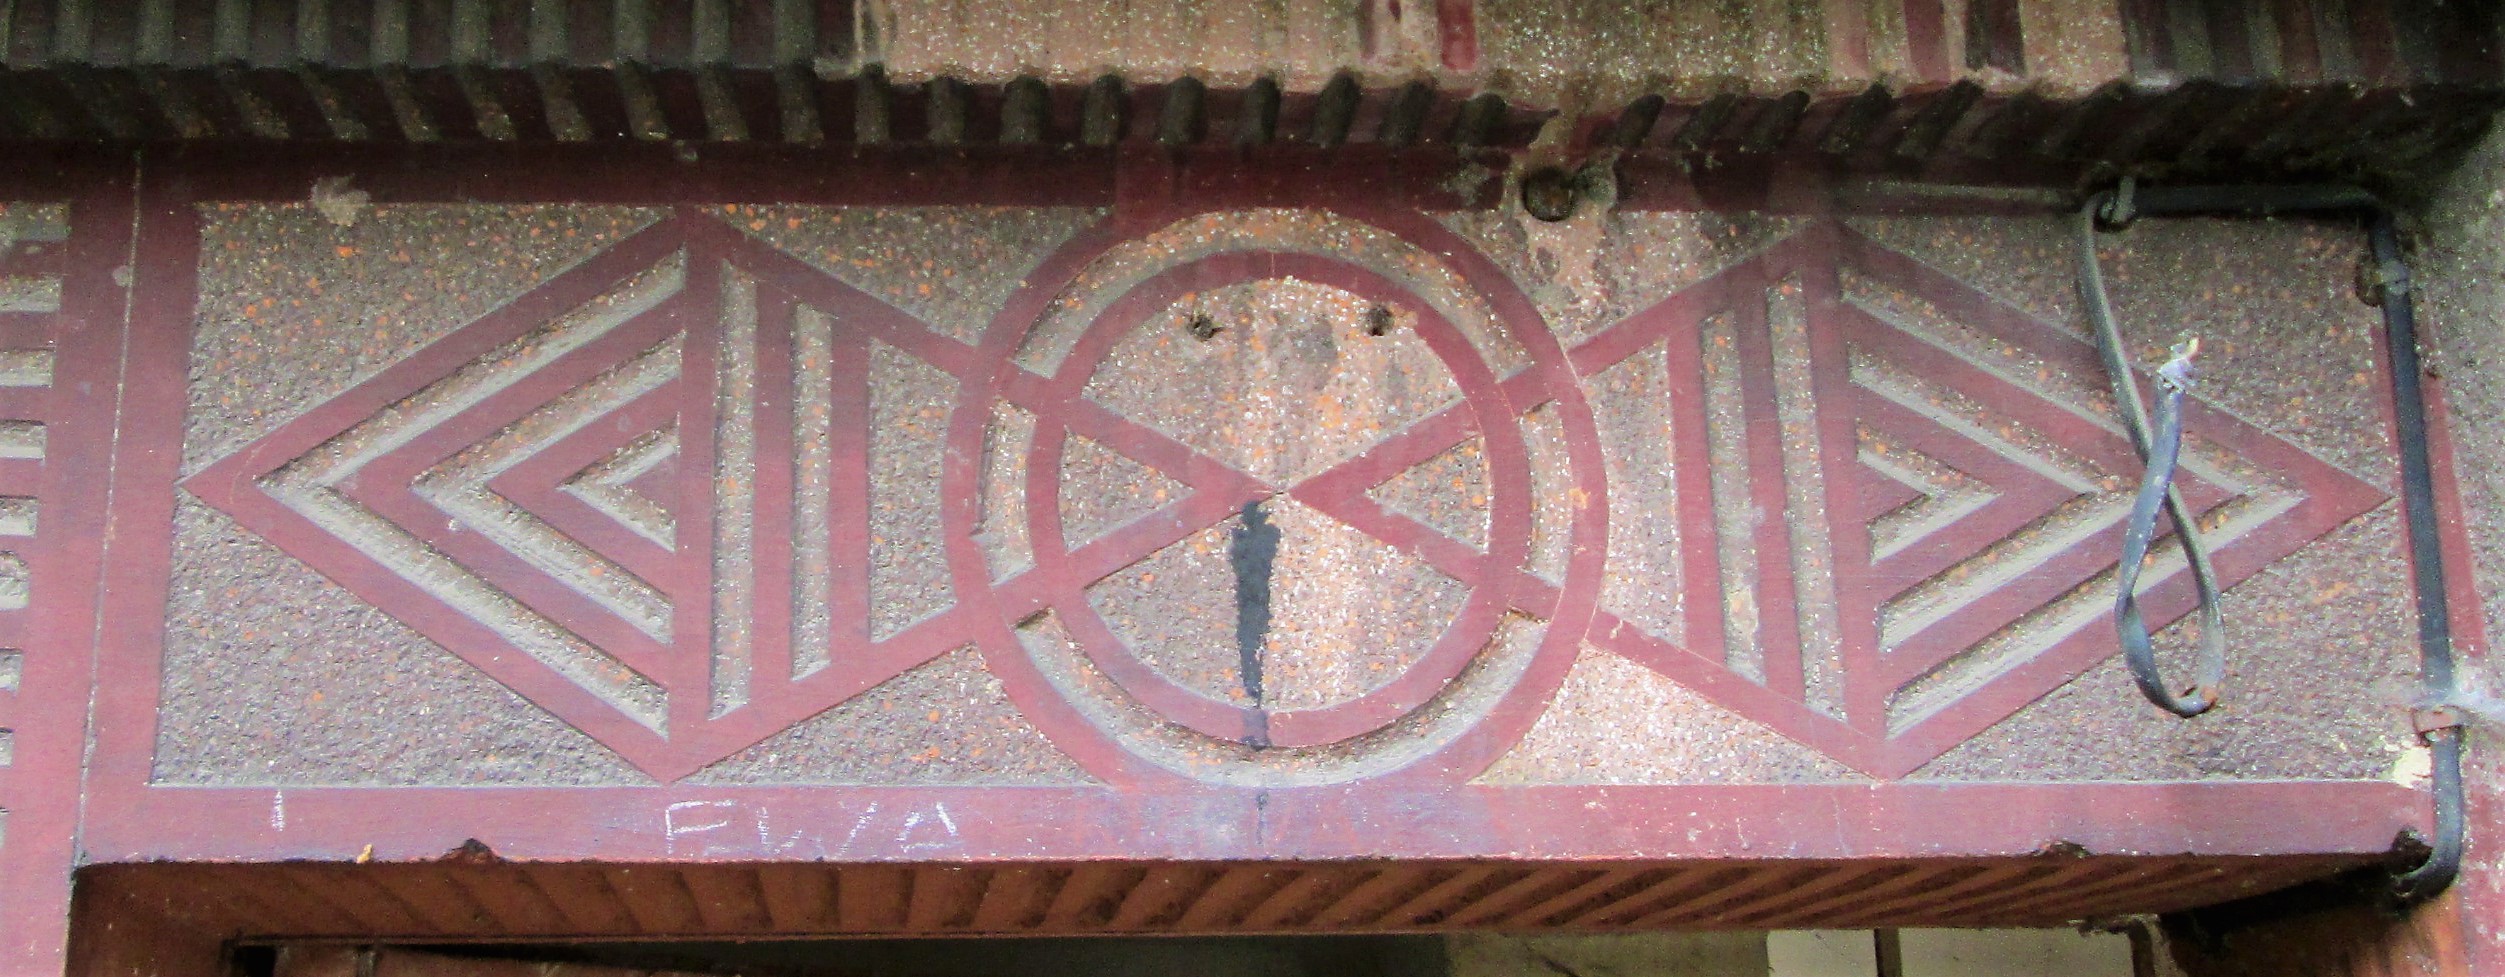 Dekoracje o motywach geometrycznych przy wejściach do budynku w Chyloni